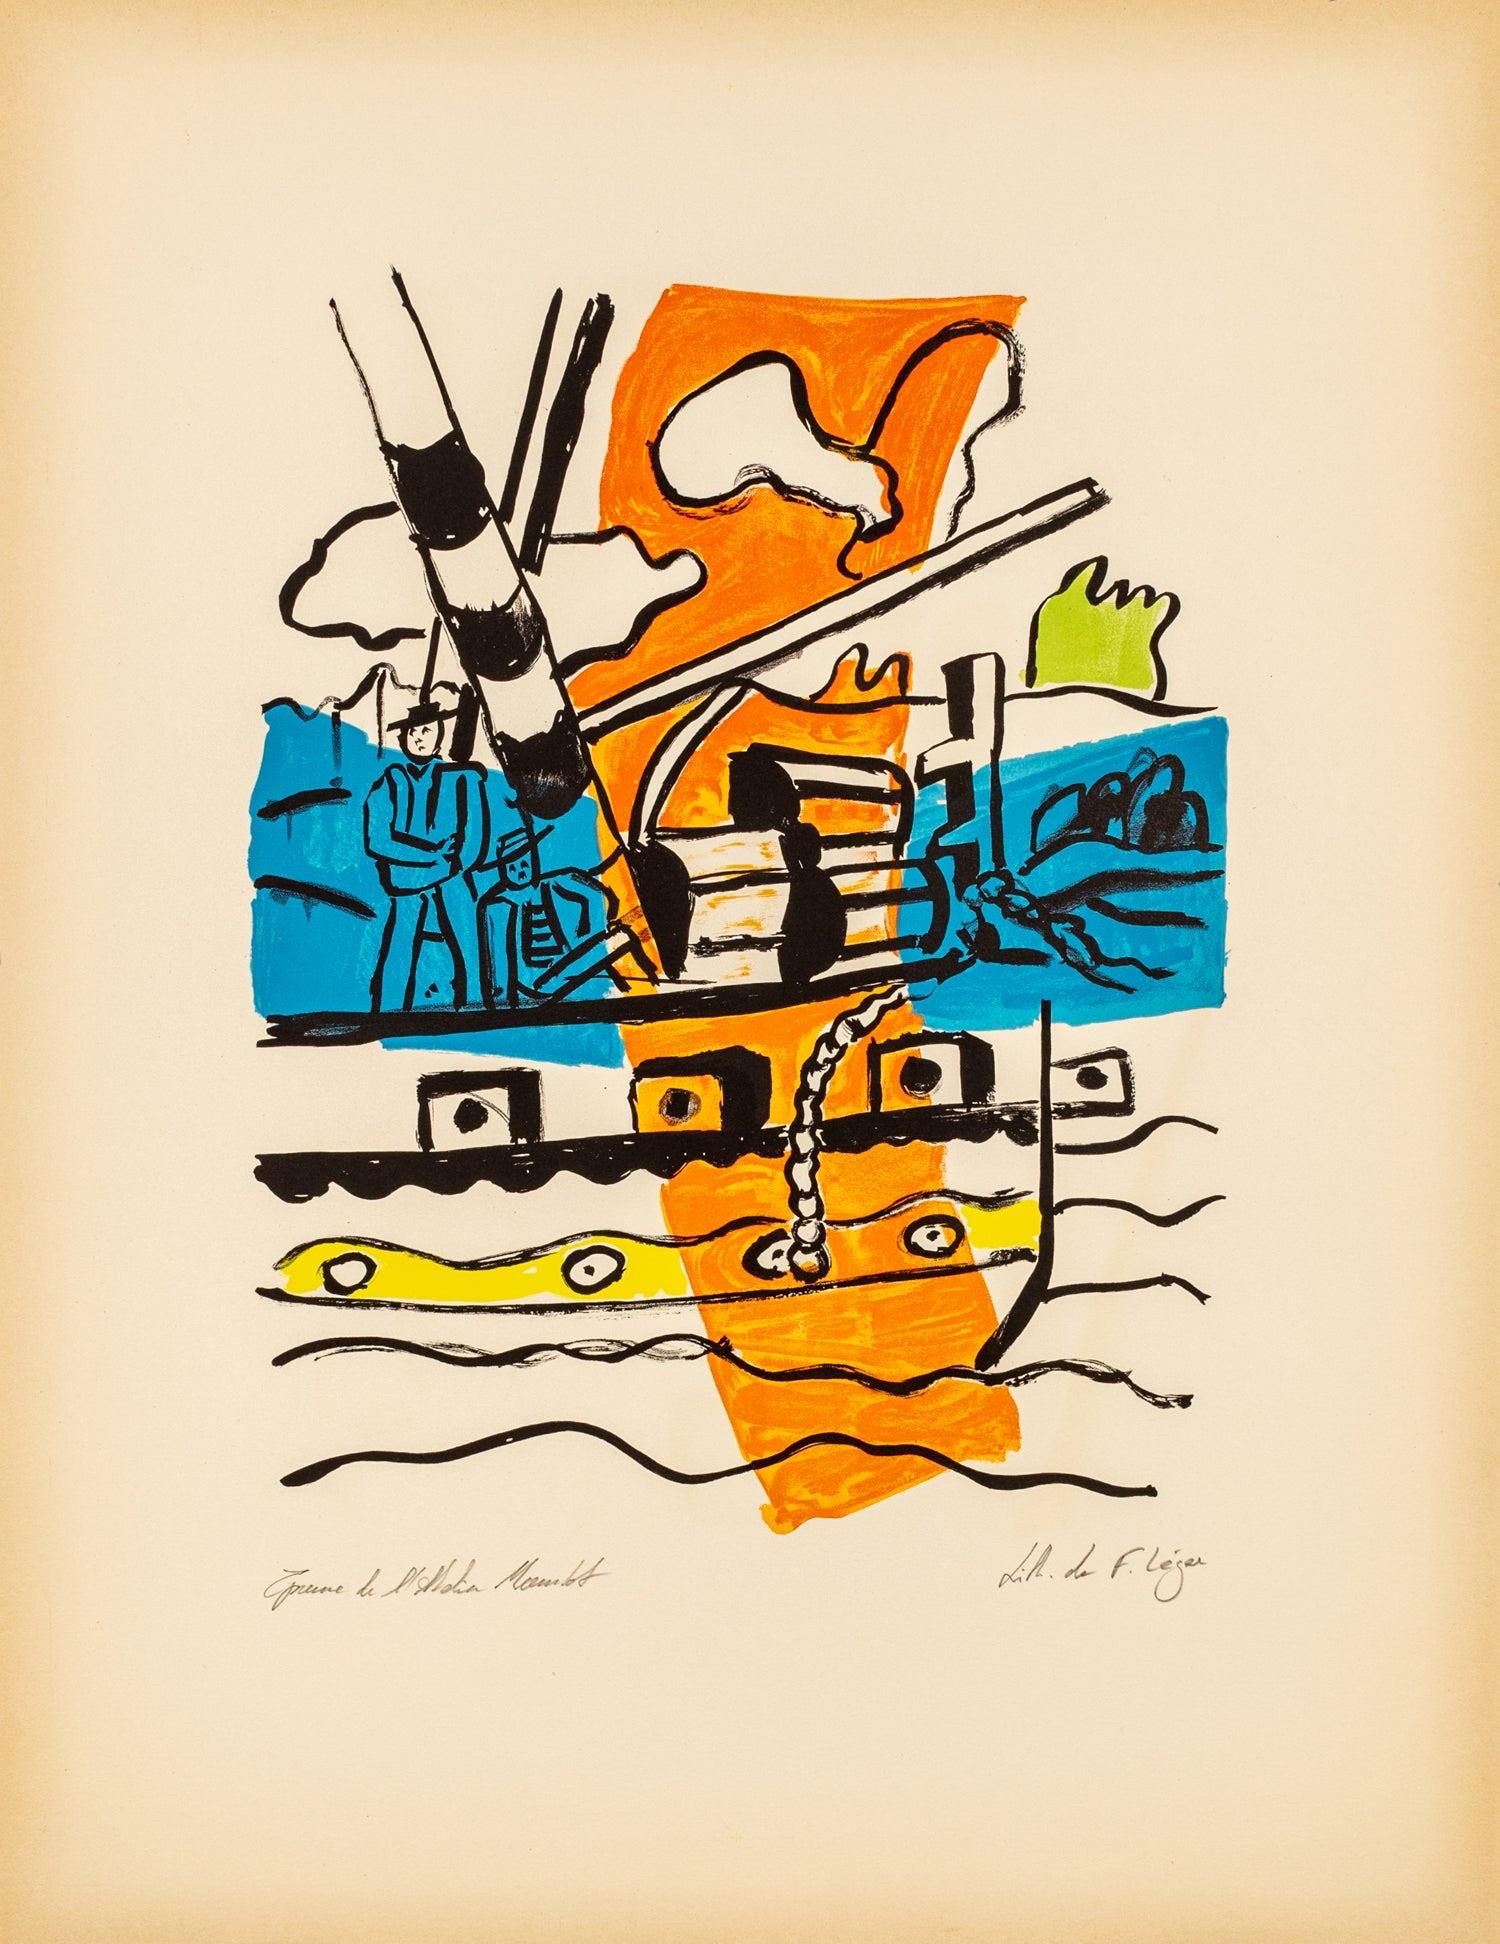 Le Remorqueur - "La ville" (d'après) Fernand Léger, 1959 - Print de (after) Fernand Léger